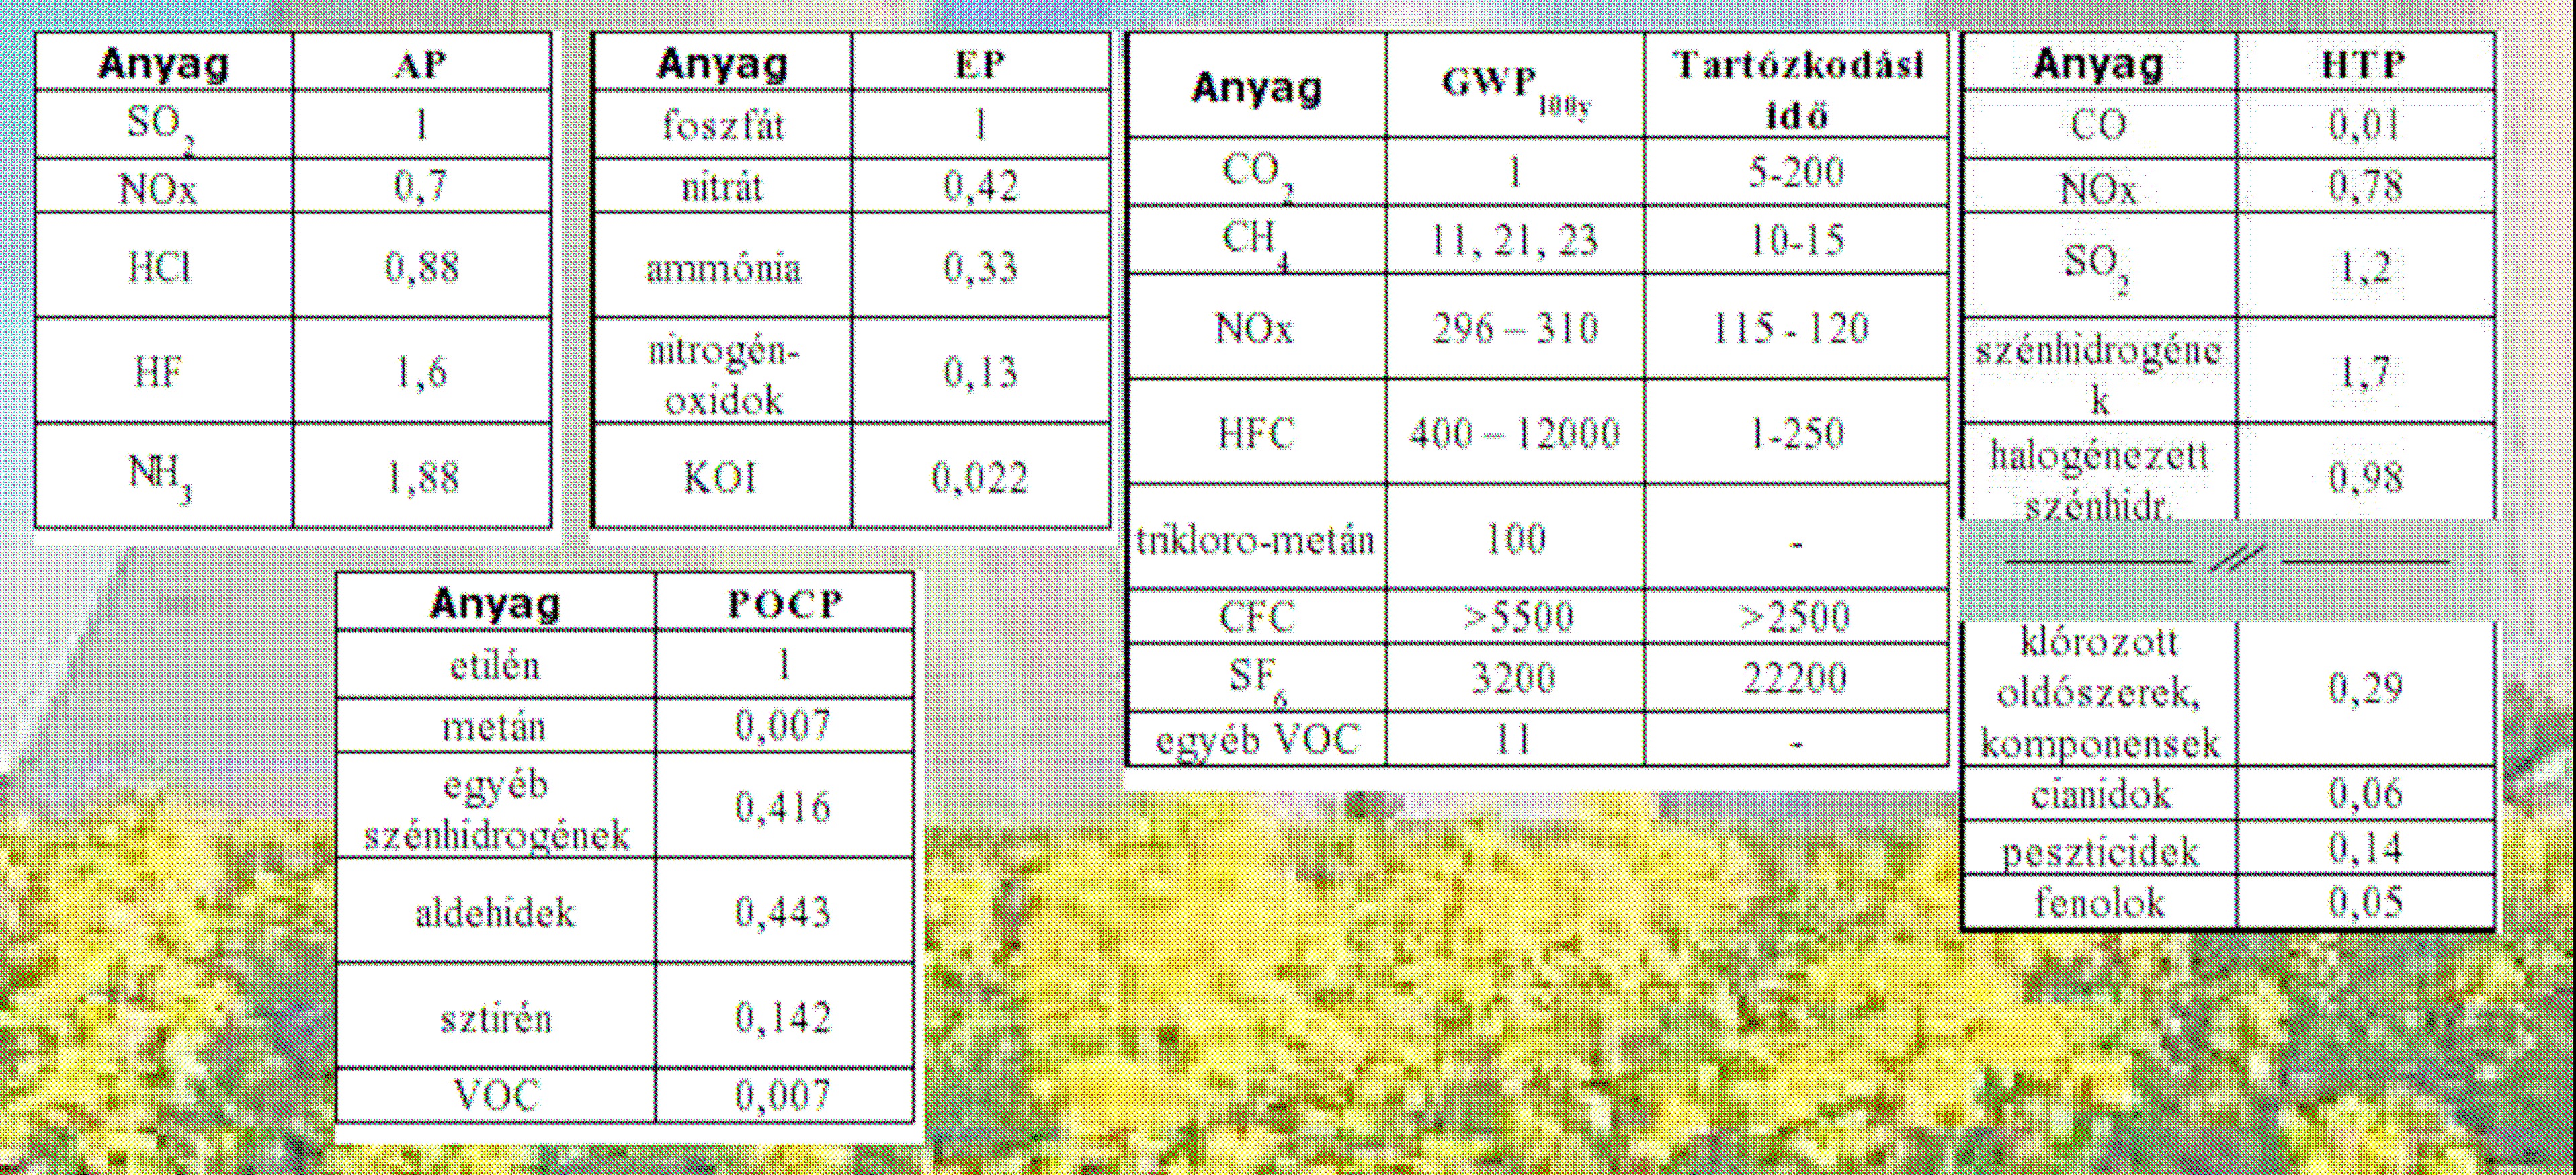 HTP humán toxicitási potenciál (Human Toxicity Potential): kg DCB-ekvivalensben adják meg; jelentése: adott mennyiségő diklór-benzol hatásával azonos (A többi érték a táblázatban található.